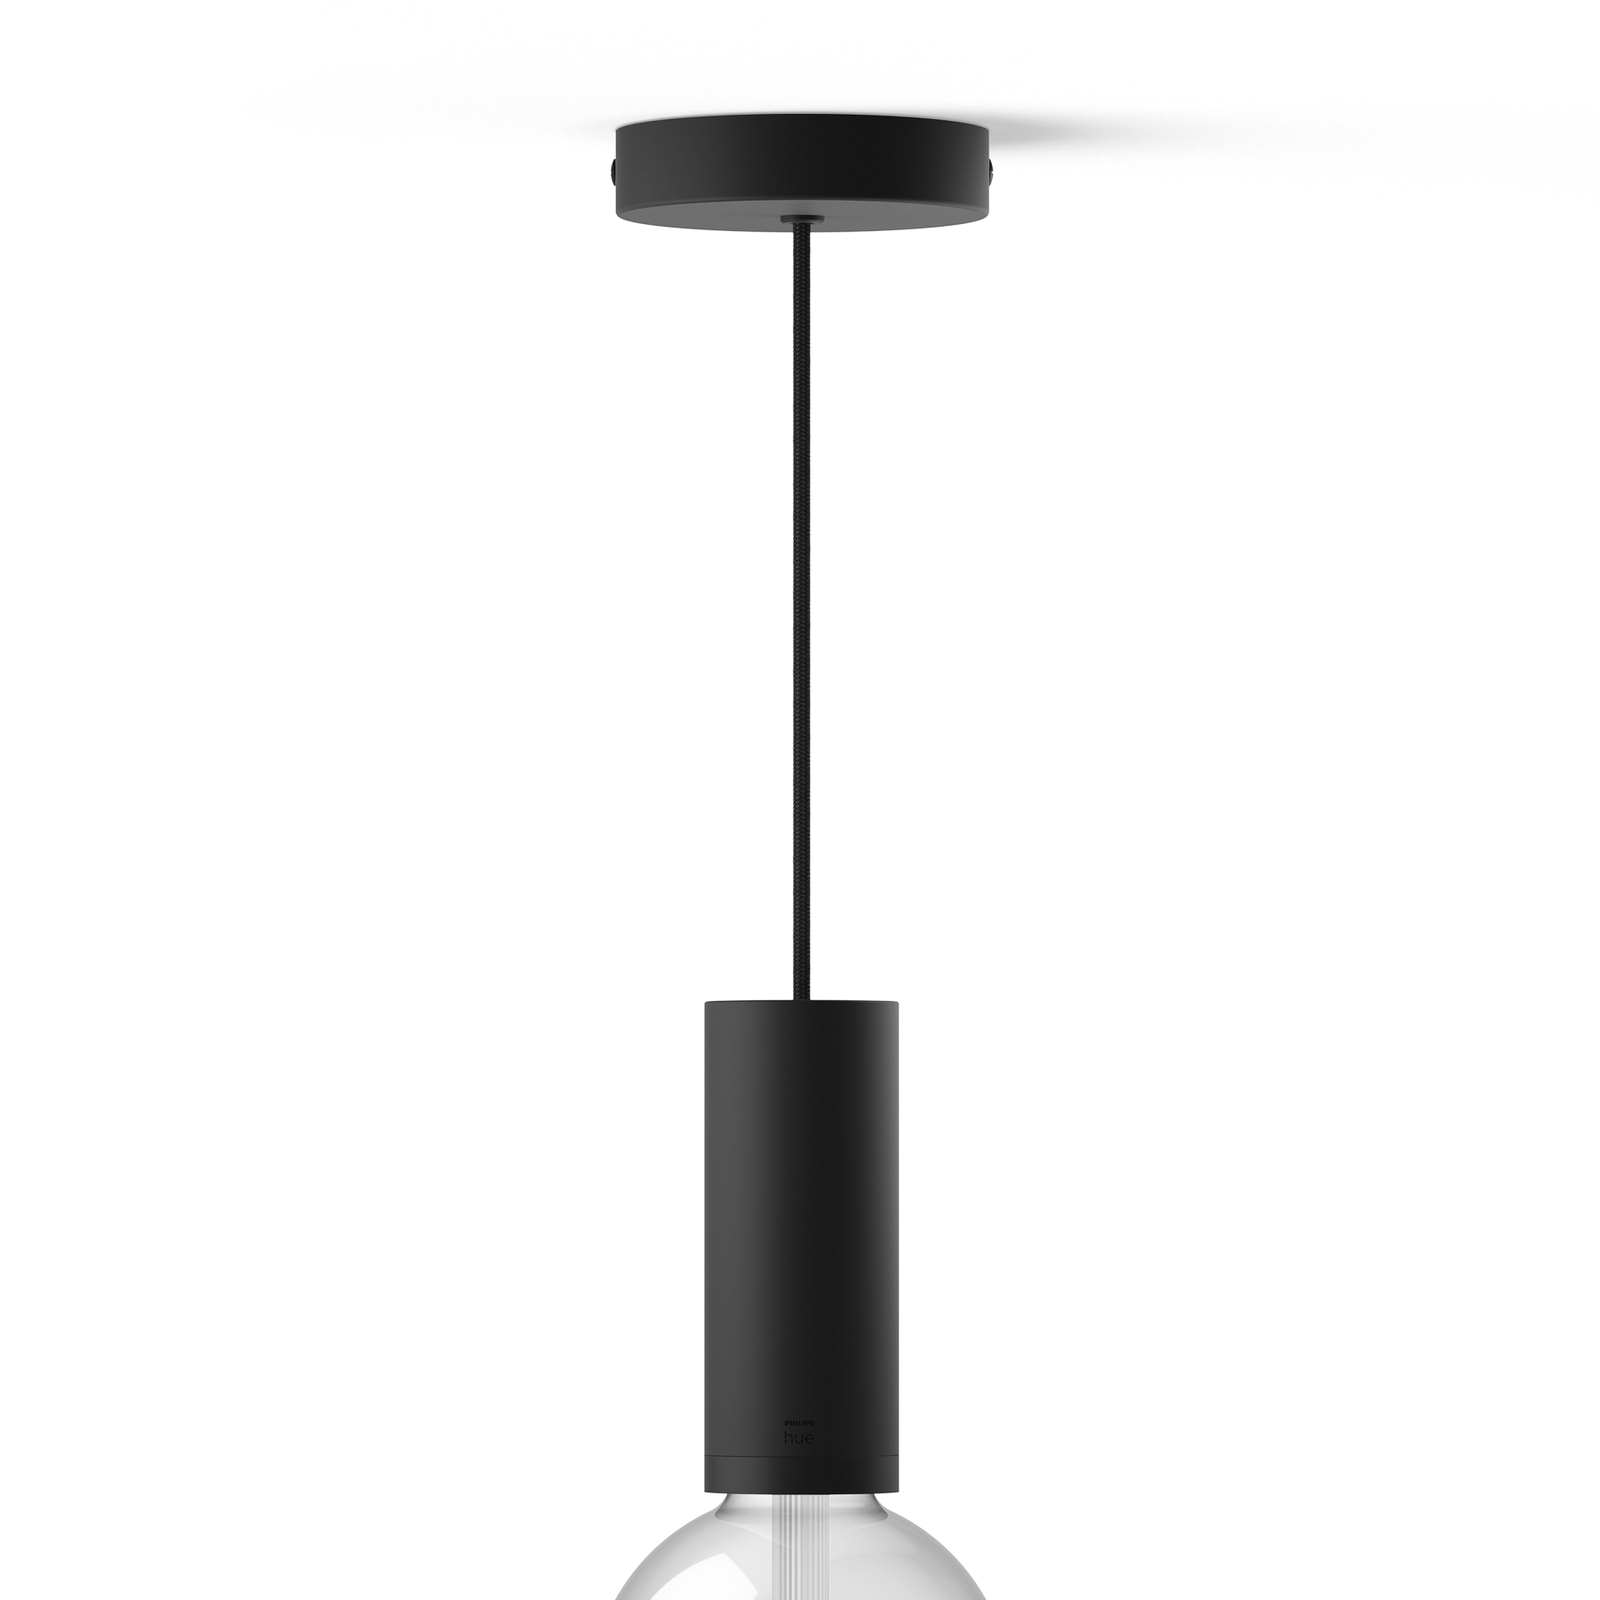 Philips Hue hanglamp, E27 fitting, 1-lamp, zwart